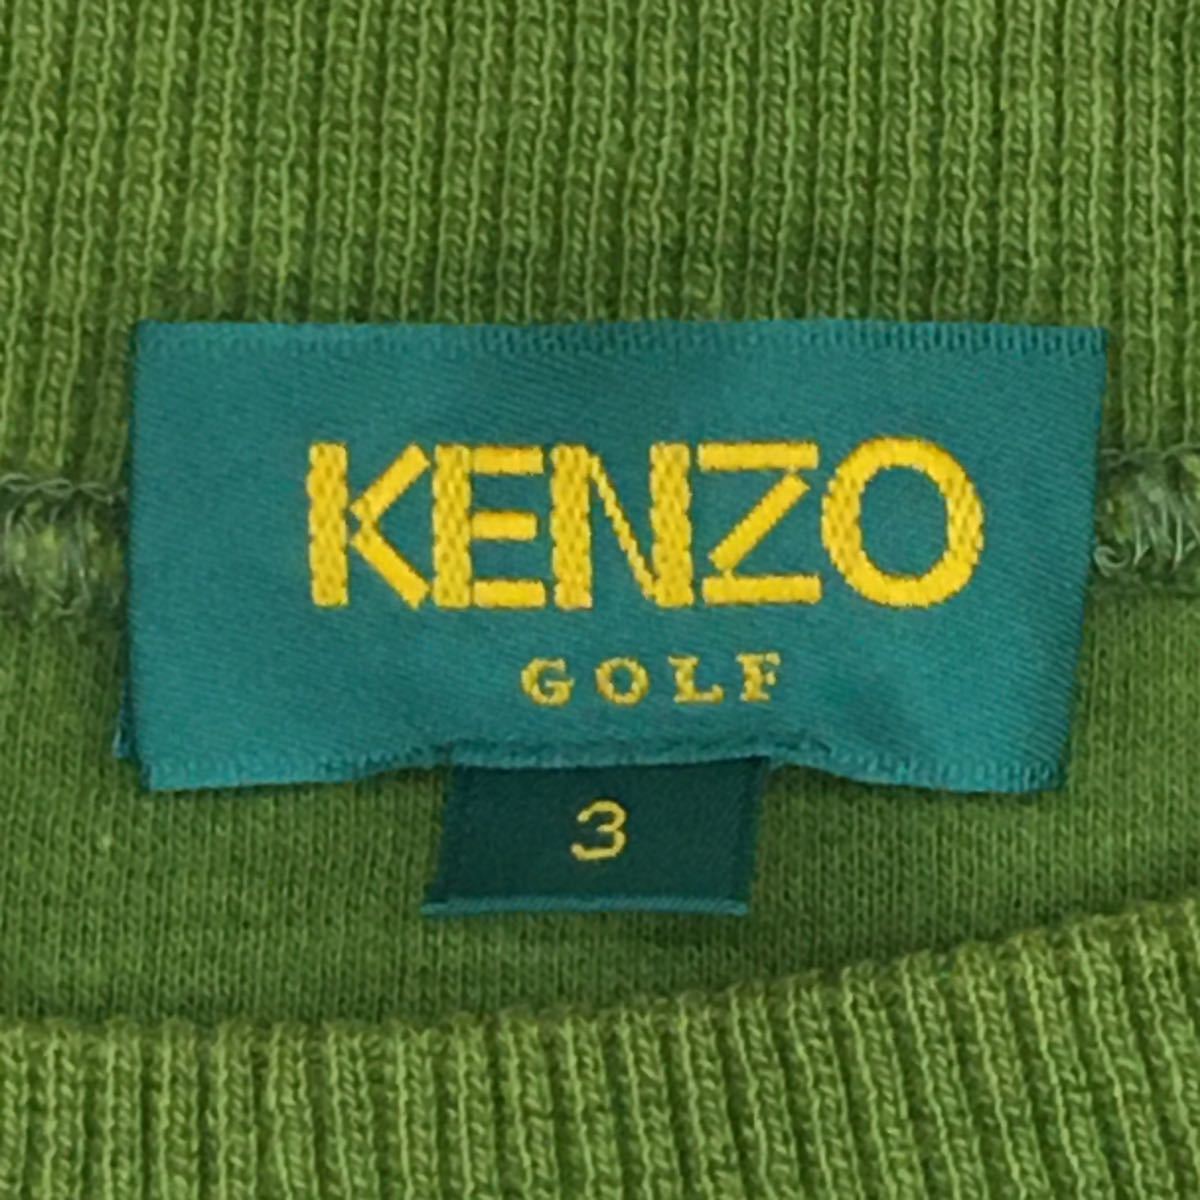 Kenzo ゴルフ スラックス 濃い緑色-